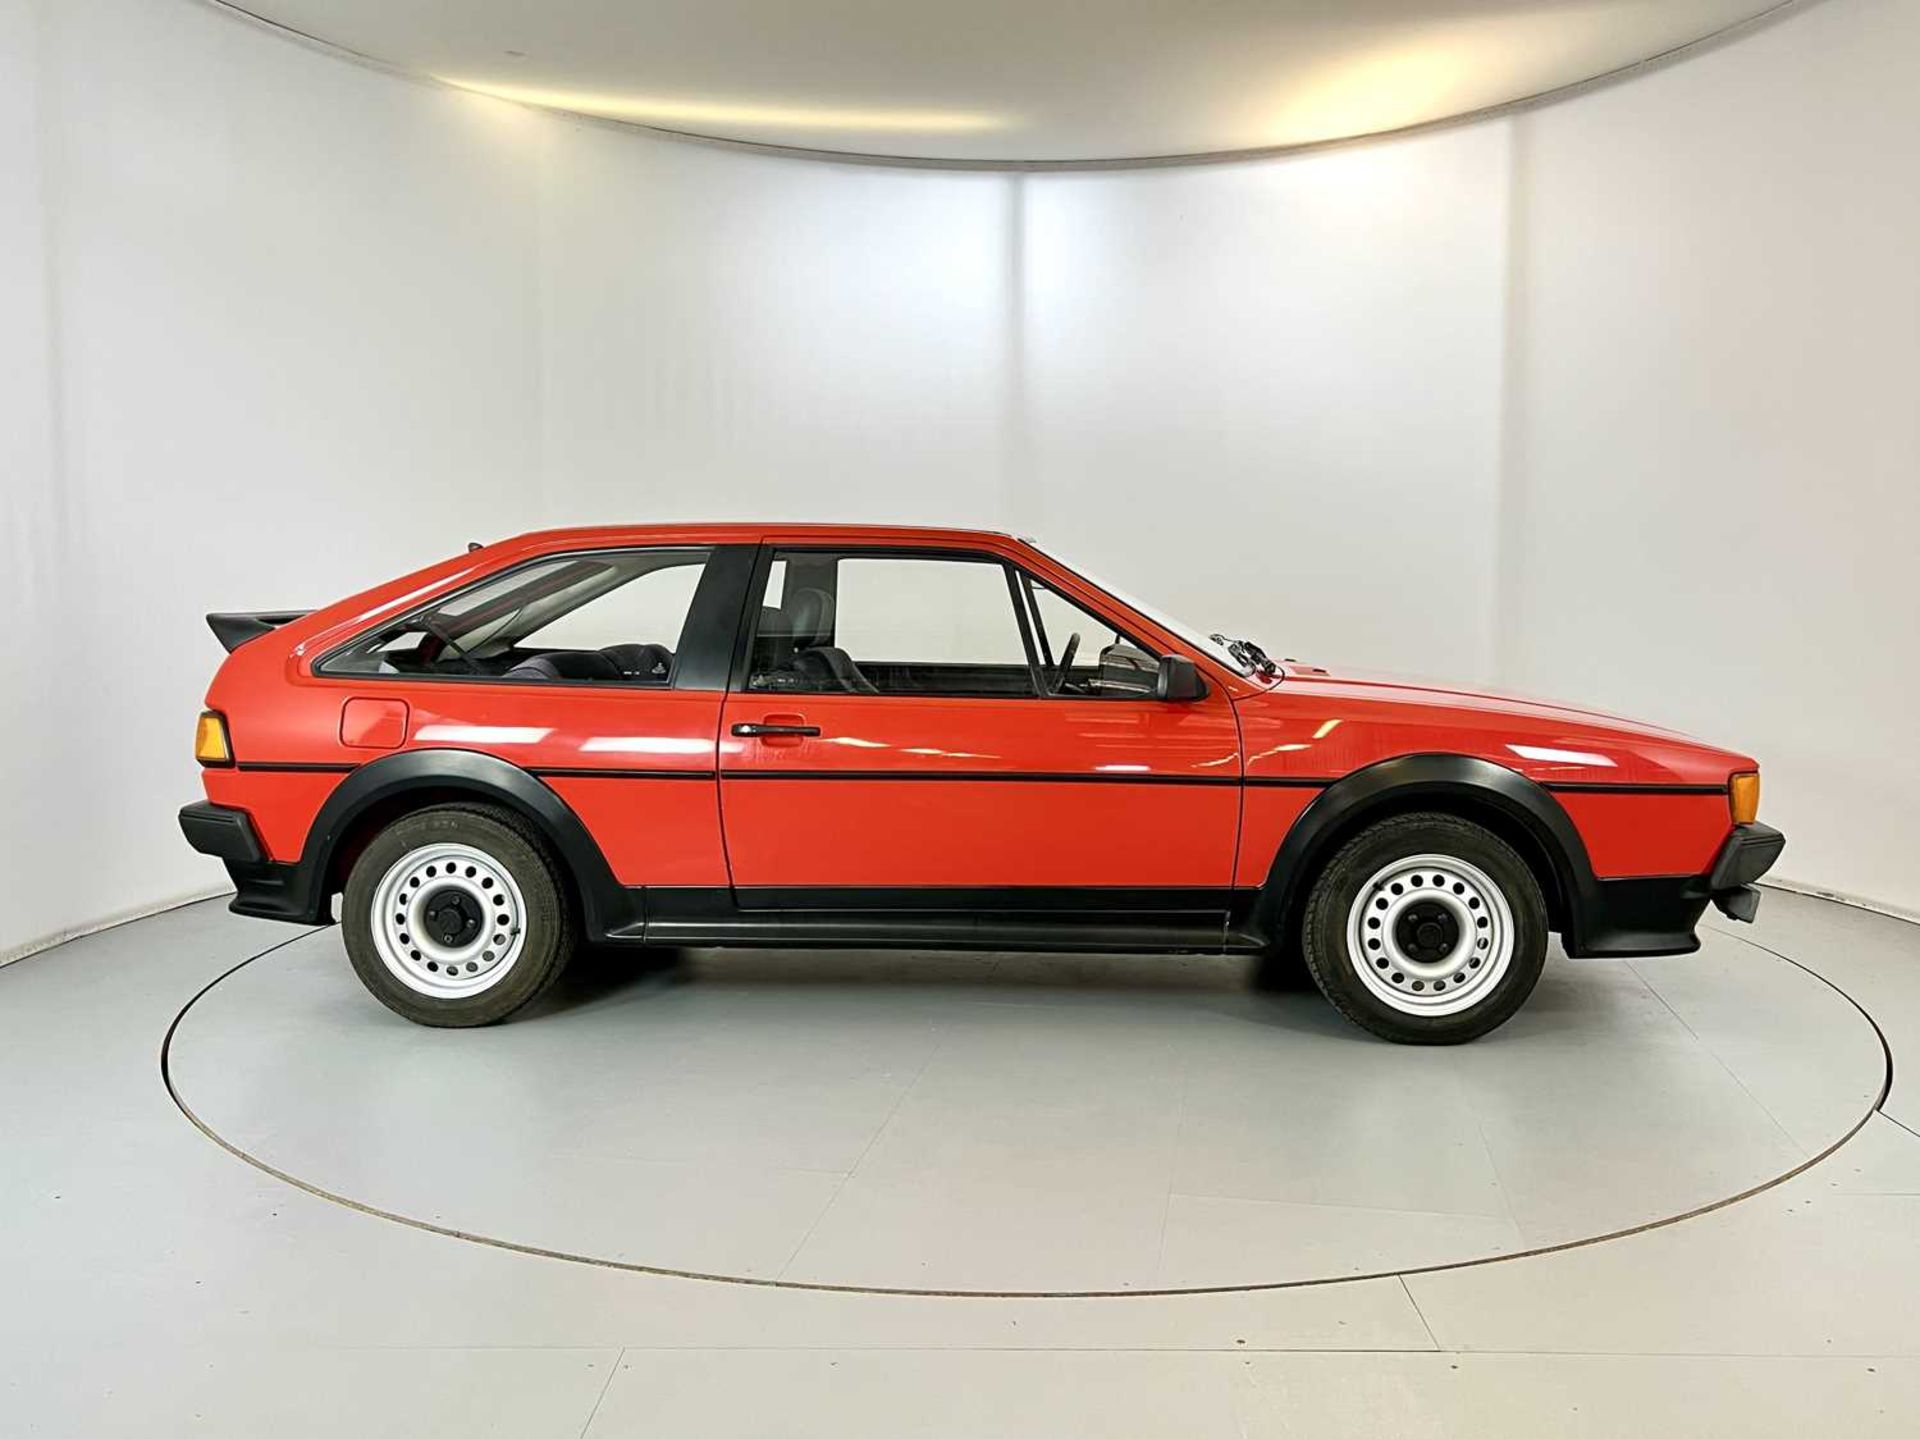 1985 Volkswagen Scirocco GTS - Image 11 of 30